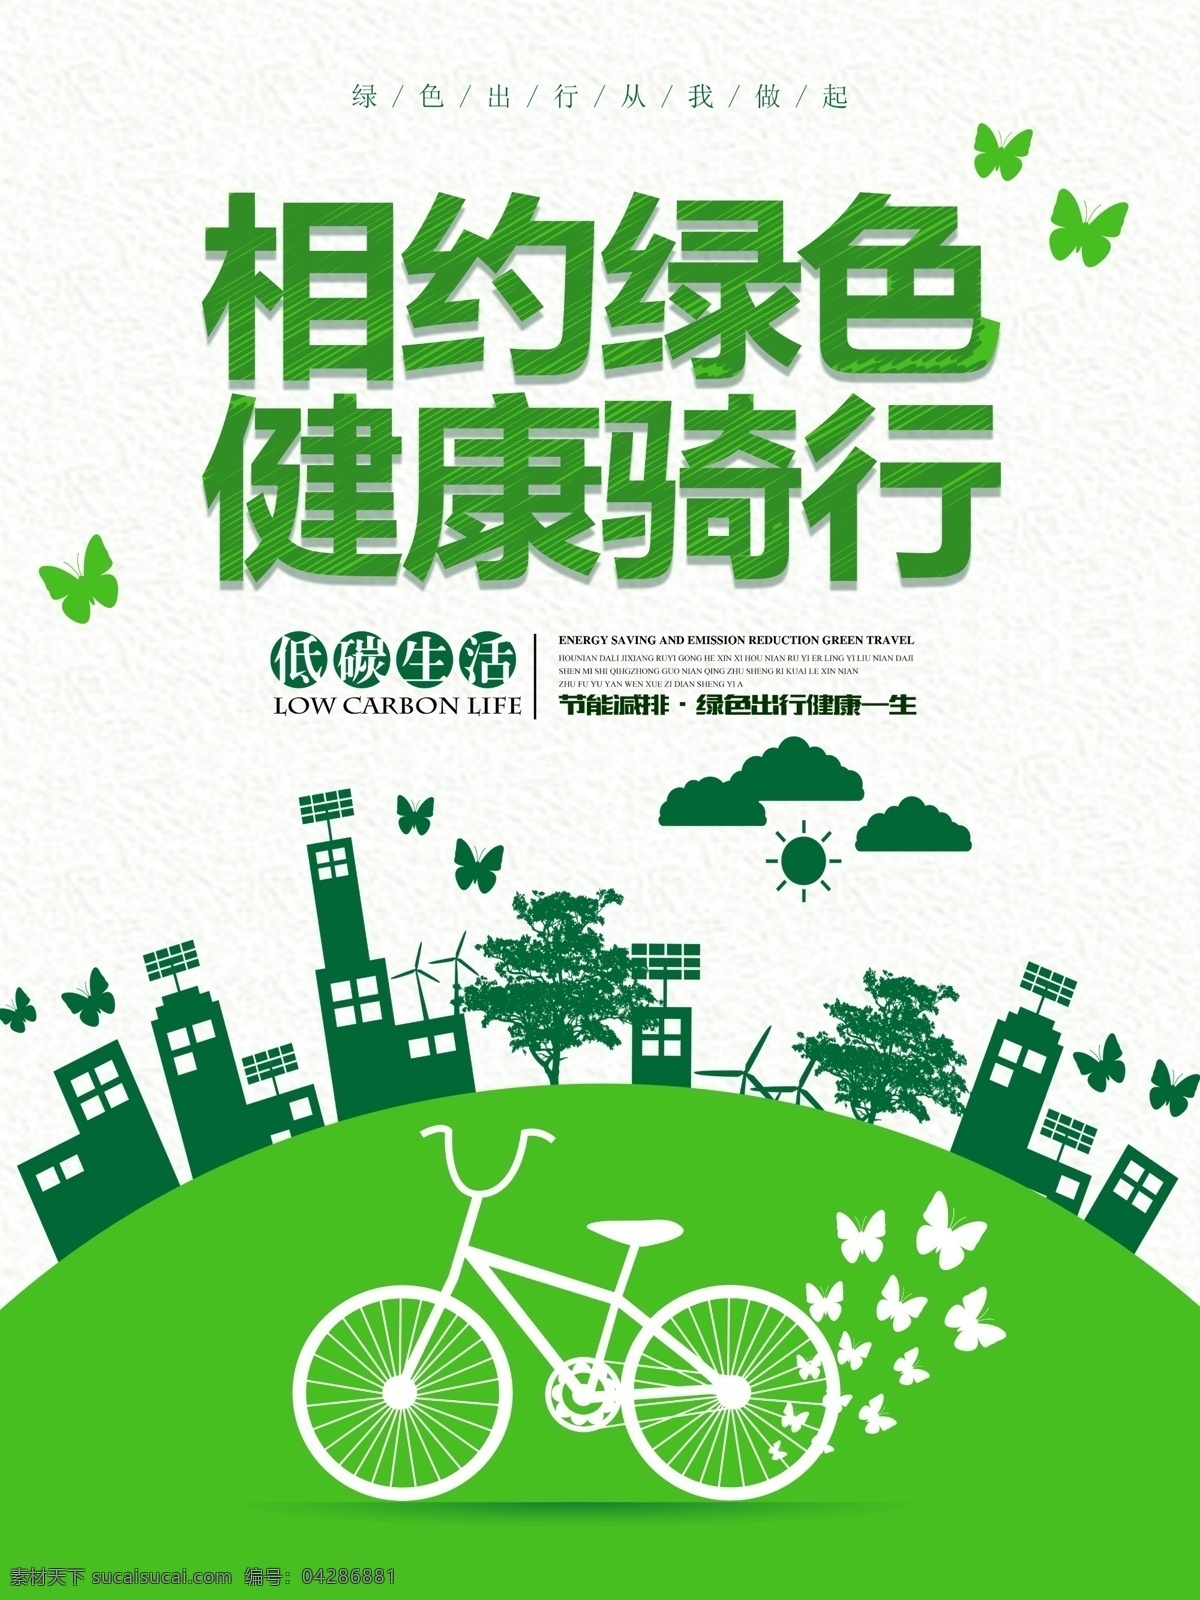 相约 绿色 健康 骑 行 公益 海报 清新 环保 节能环保 简约 绿色出行 自行车 低碳 节能减排 节能 环保节能 绿色环保 保护环境 爱护地球 公交站牌 骑行 绿色健康 健康公益